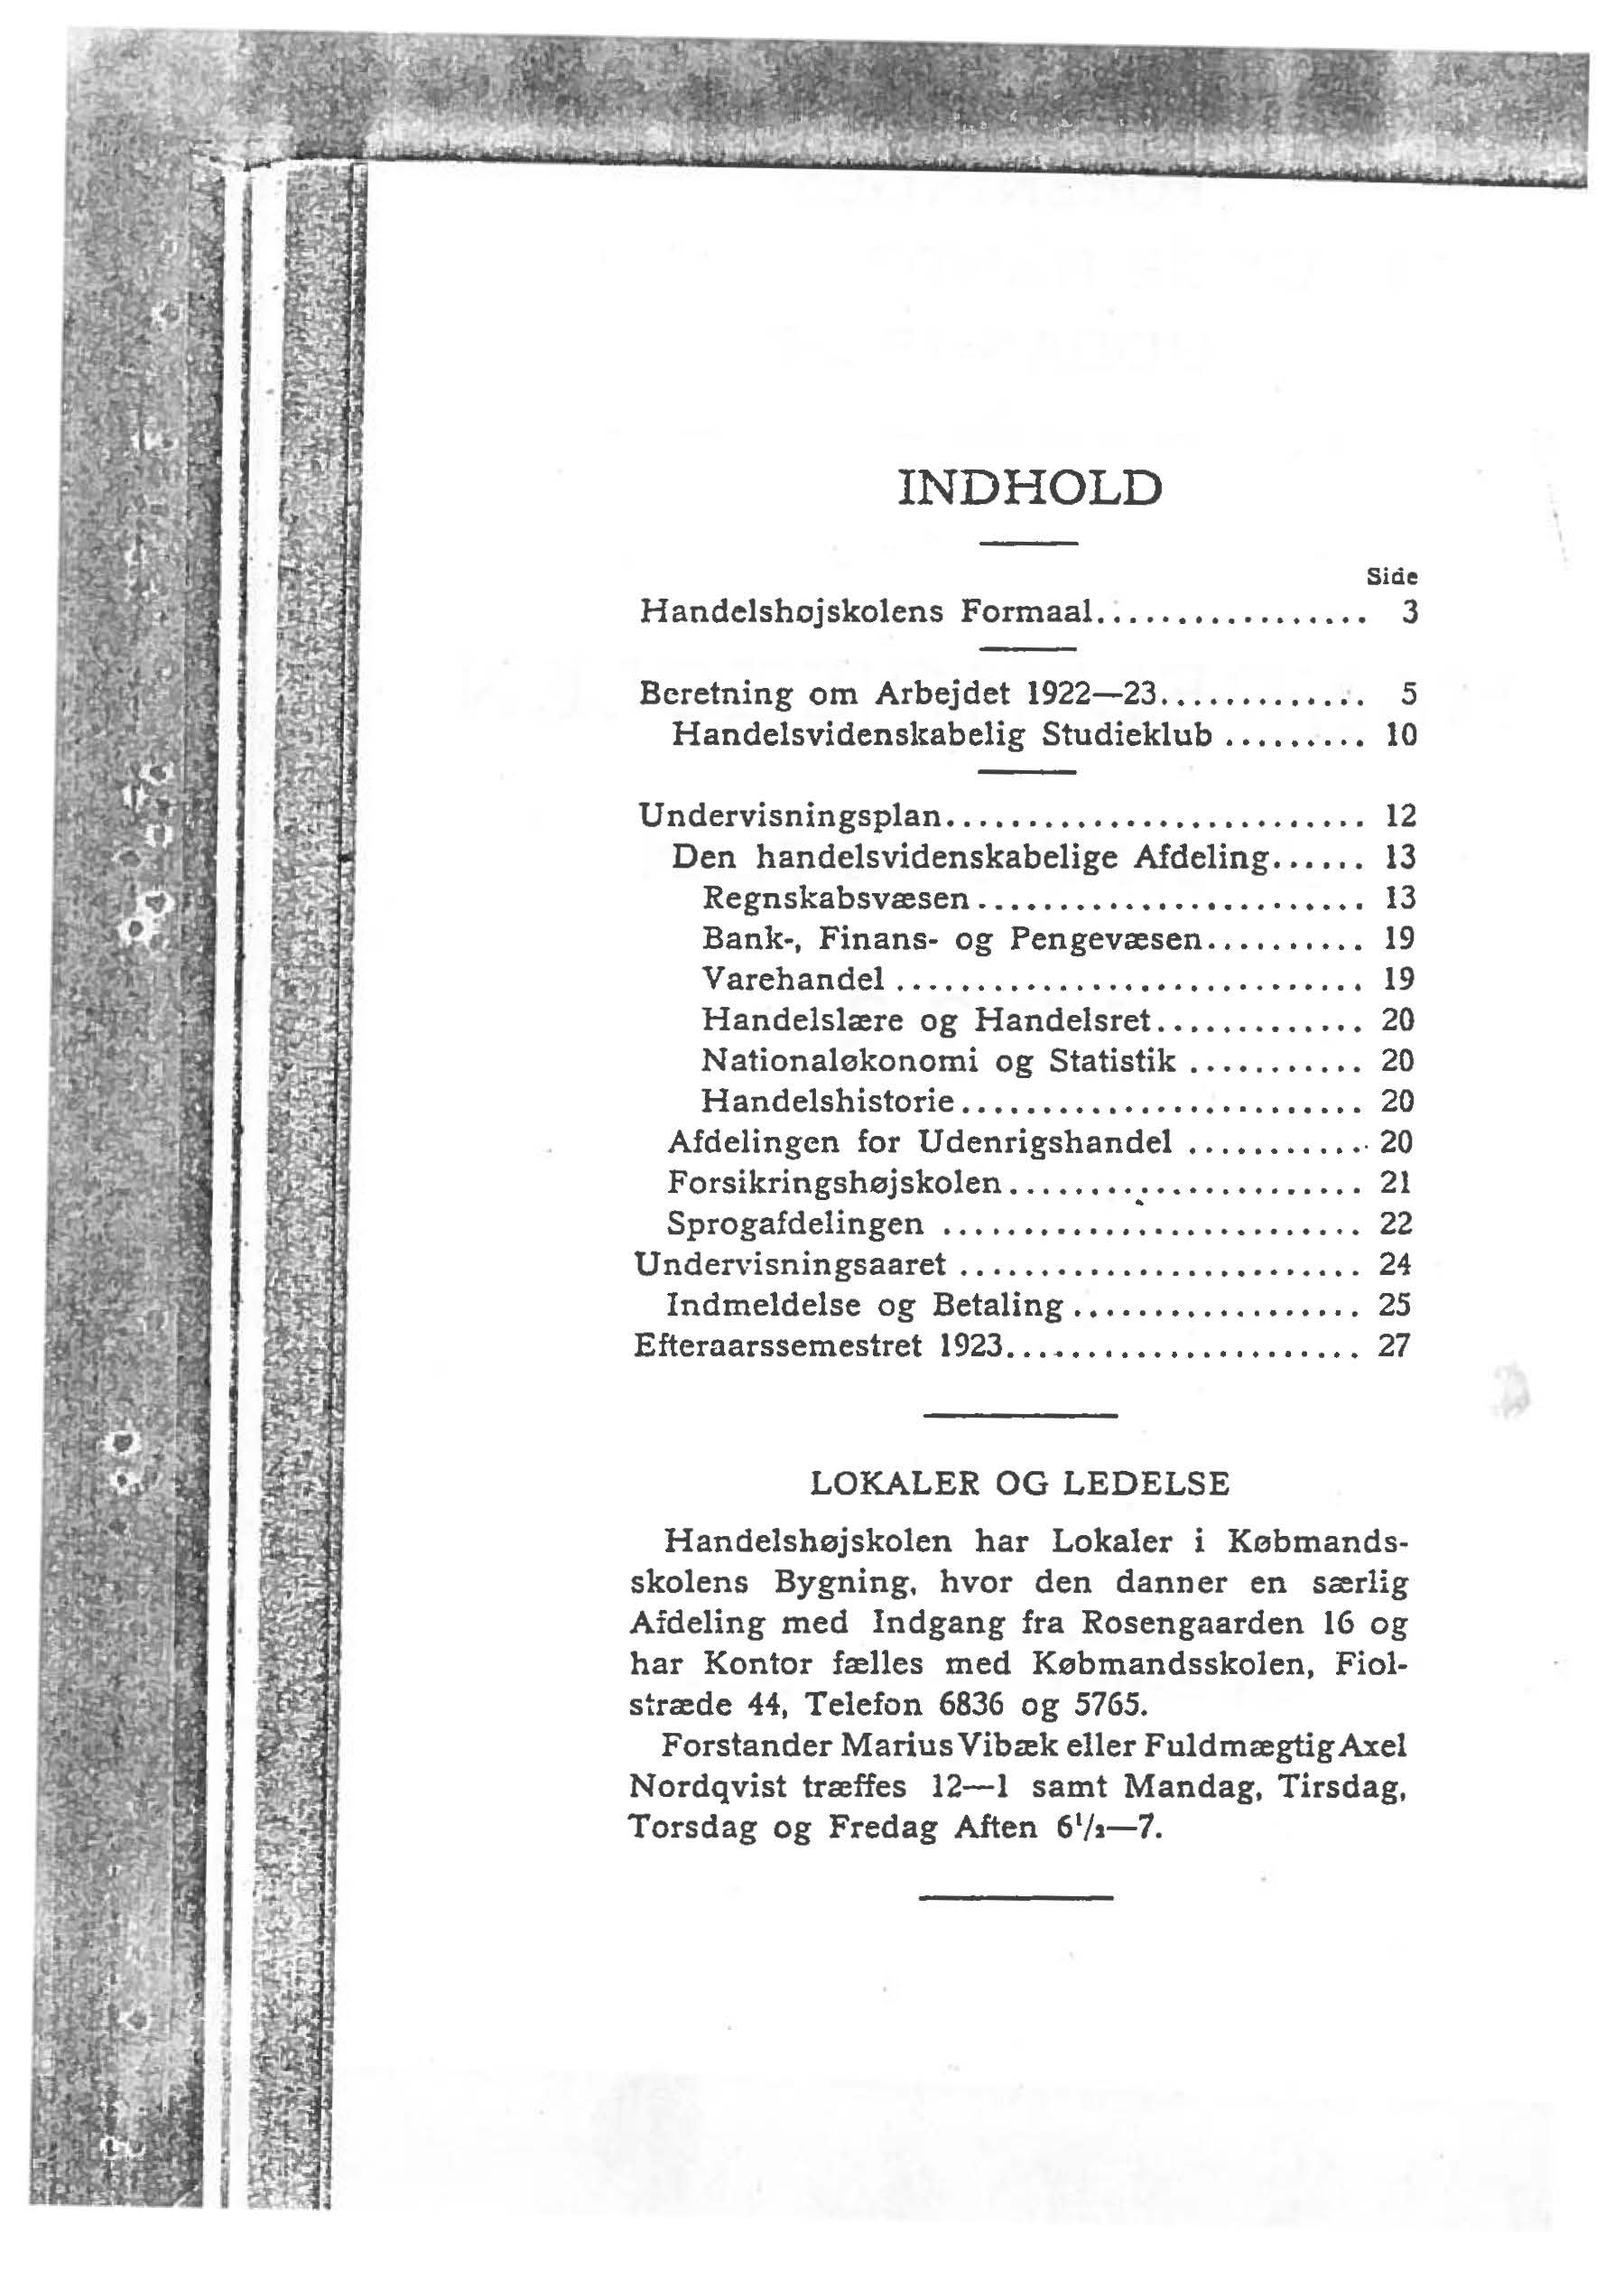 NDHOLD Side Handelshojskolens Formaal... 3 Beretning om Arbejdet 1922-23... 5 Handelsvidenskabelig Studieklub........ 10 Undervisningsplan... 12 Den handelsvidenskabelige Afdeling...... 13 Regnskabsvæsen.